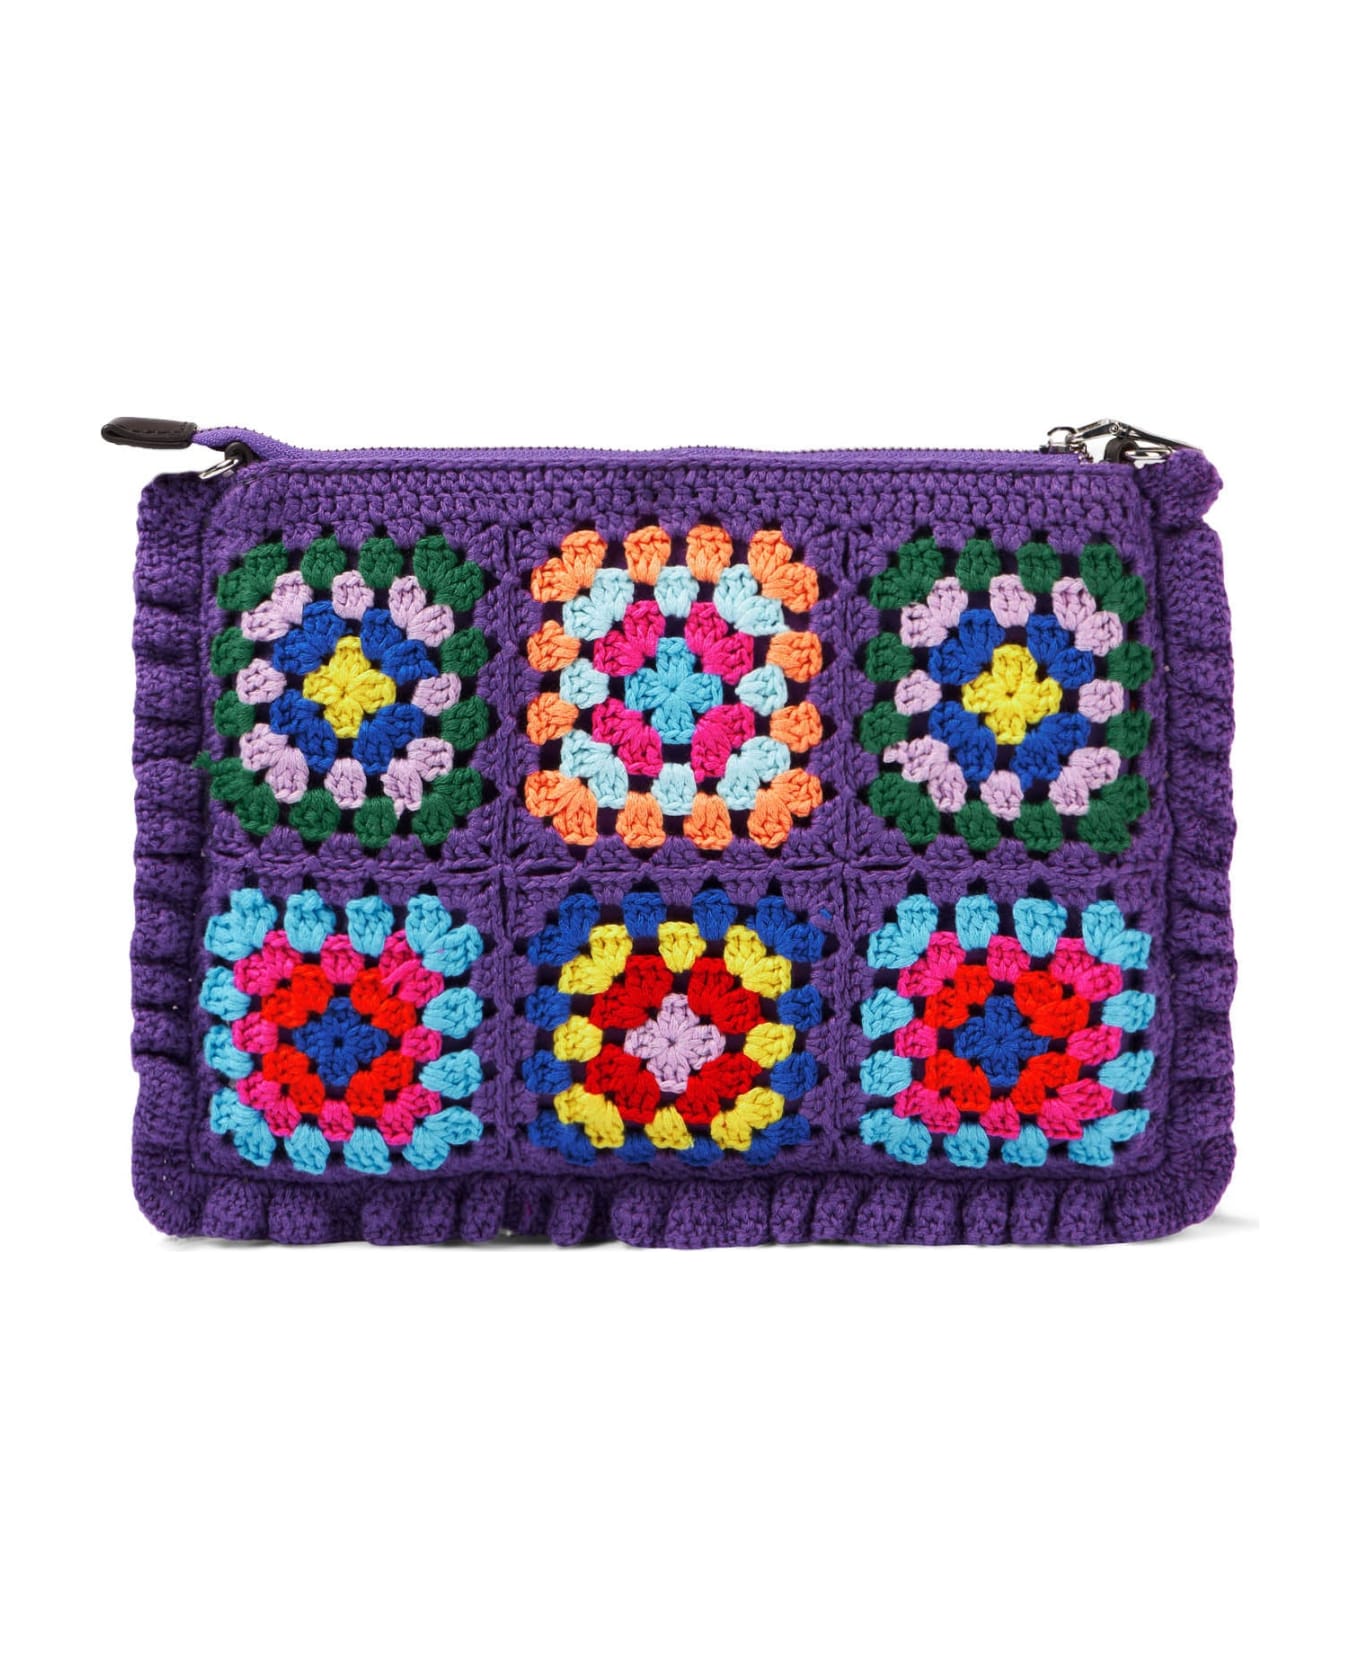 MC2 Saint Barth Parisienne Violet Crochet Crossbody Pouch Bag - PINK